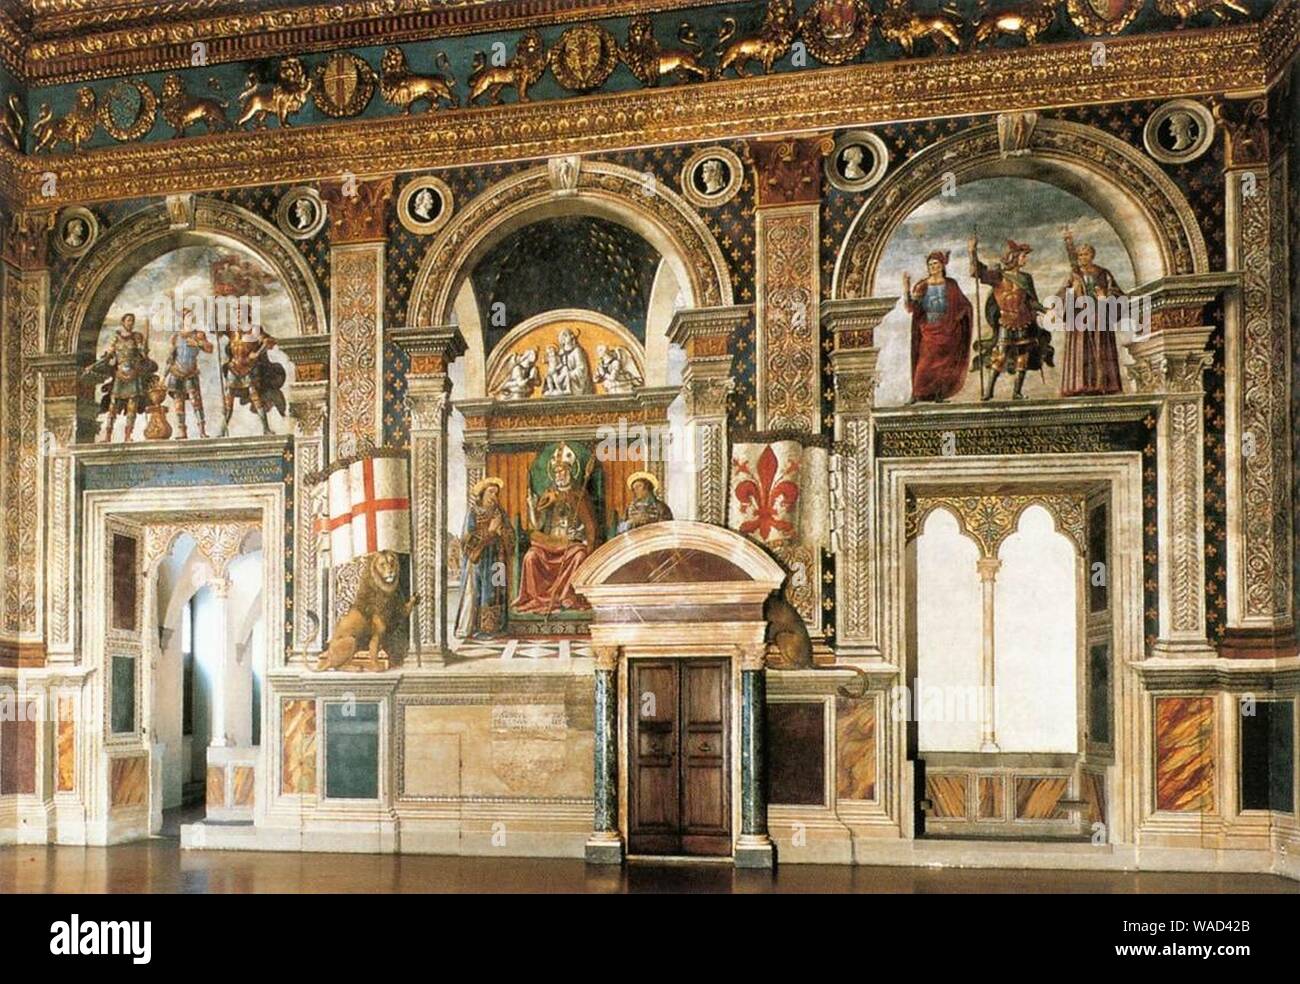 Domenico ghirlandaio, affreschi della sala dei gigli 01. Stock Photo